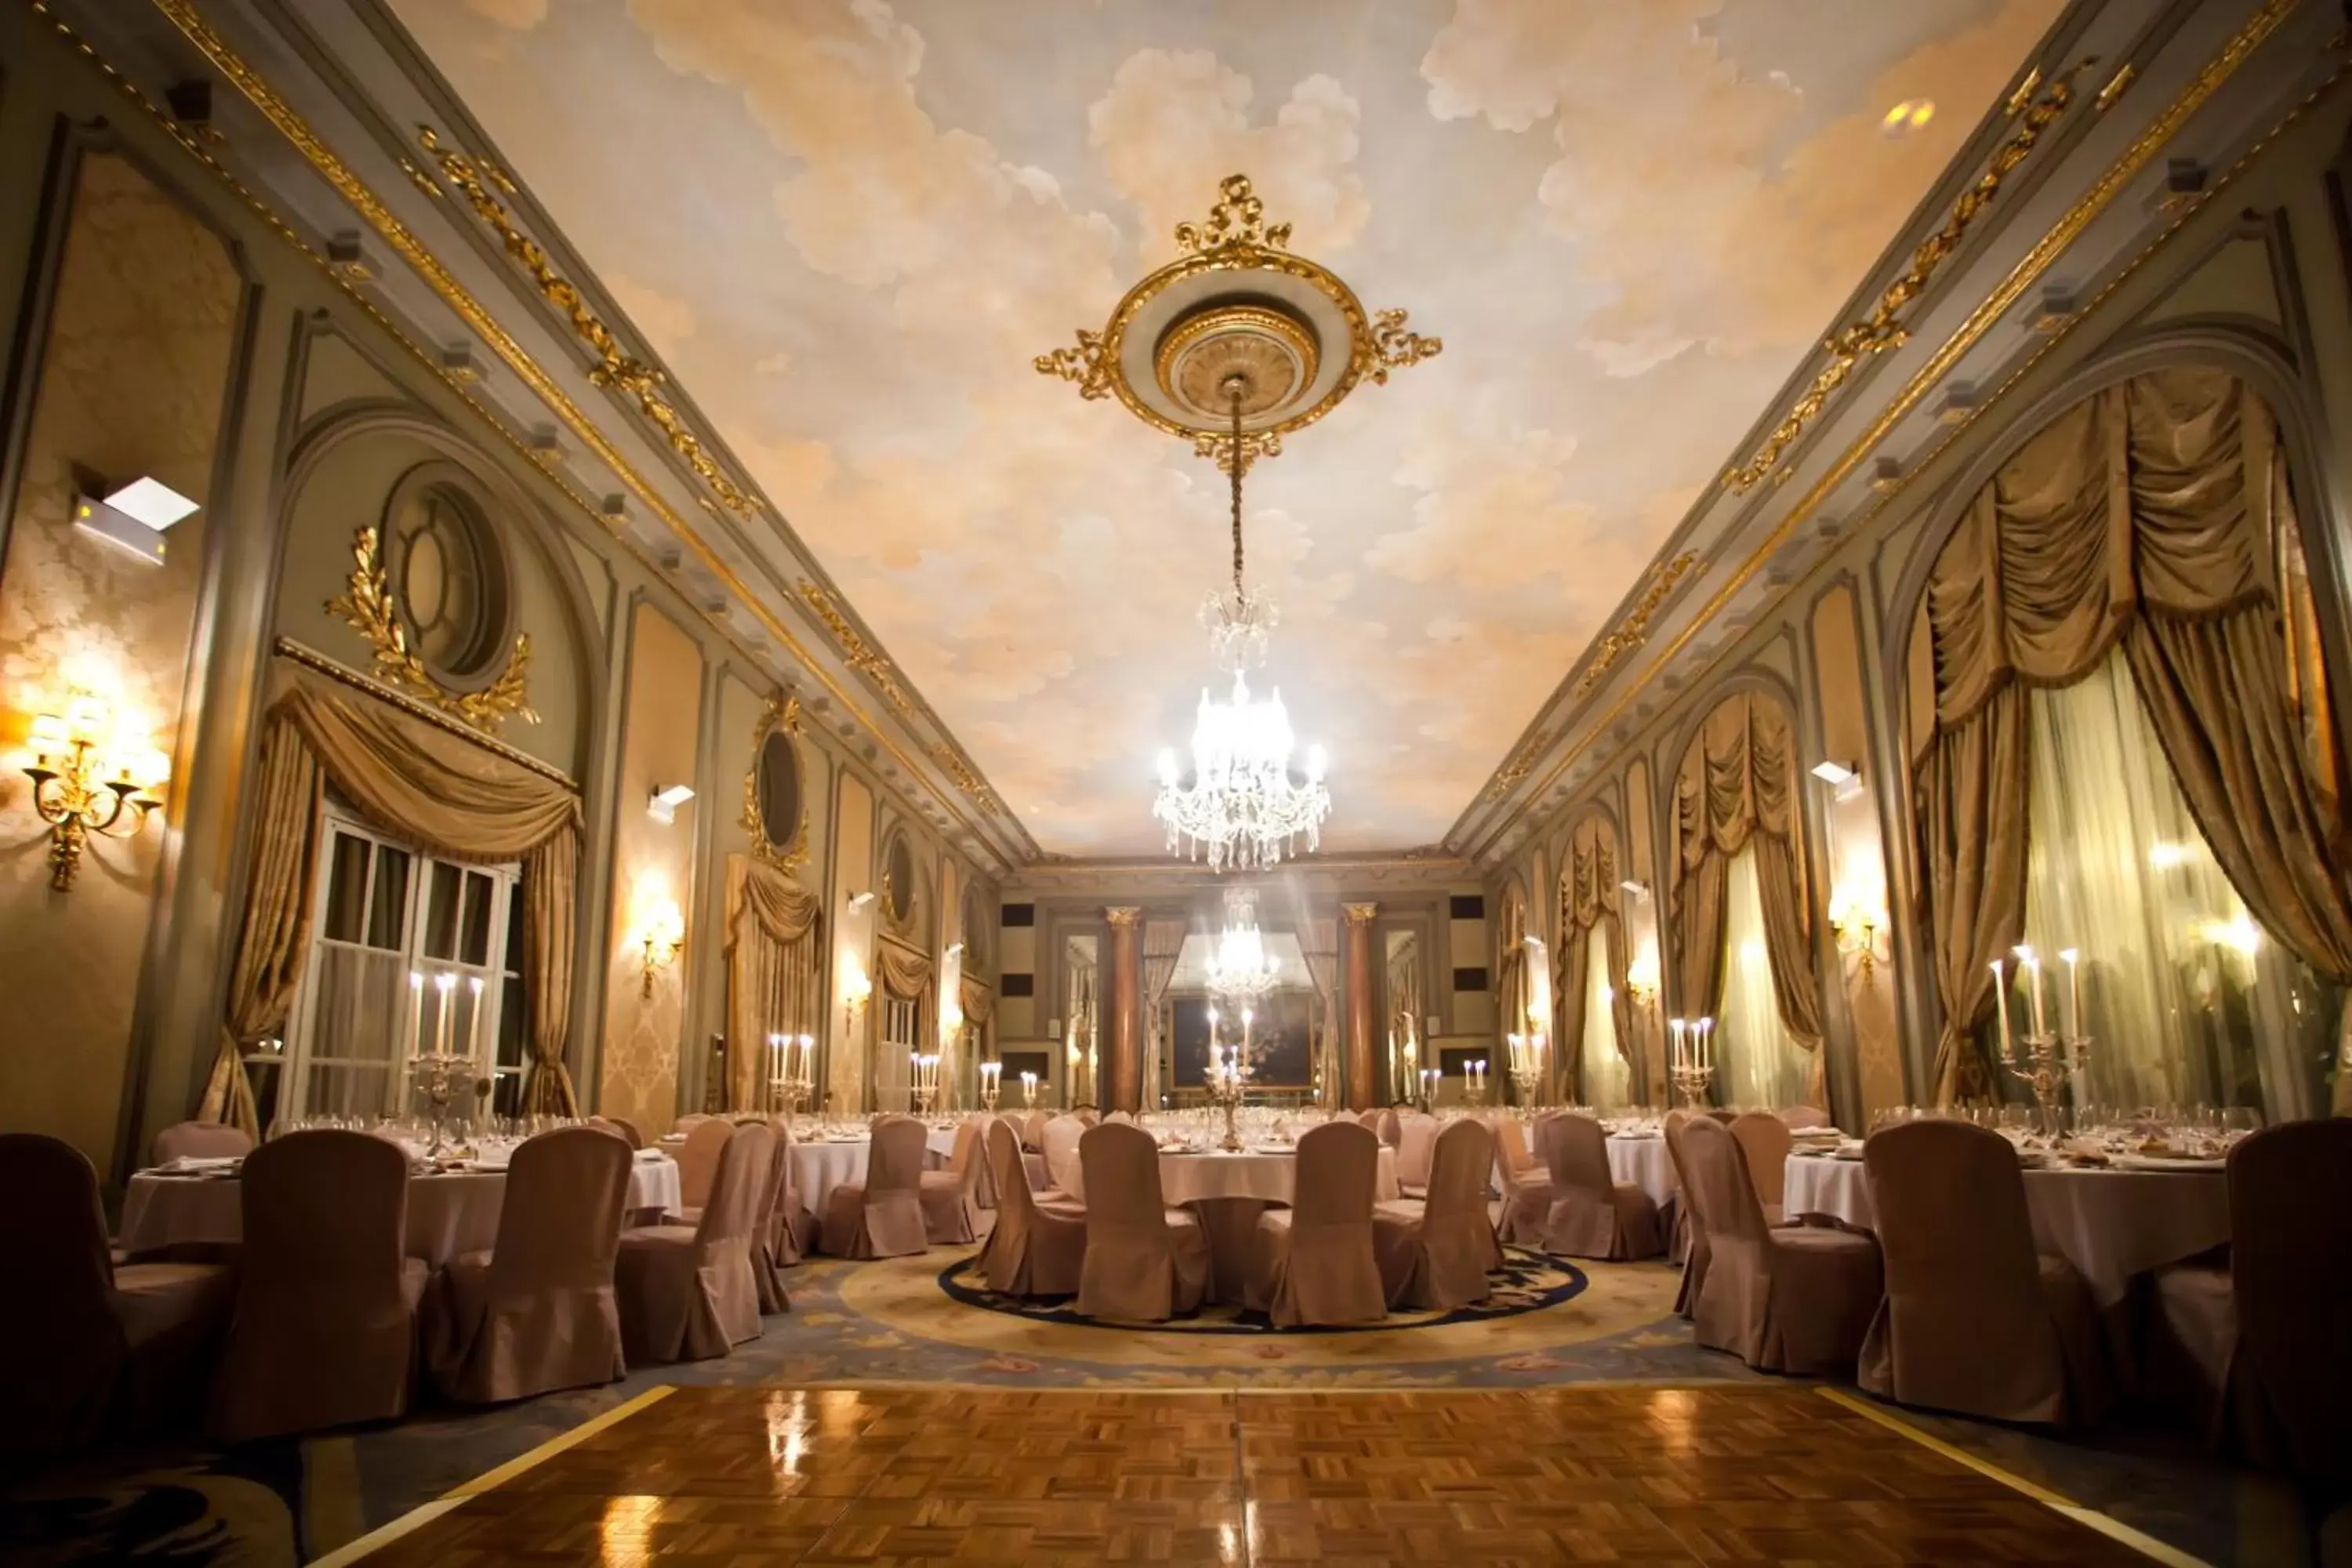 Banquet/Function facilities, Banquet Facilities in Hotel El Palace Barcelona